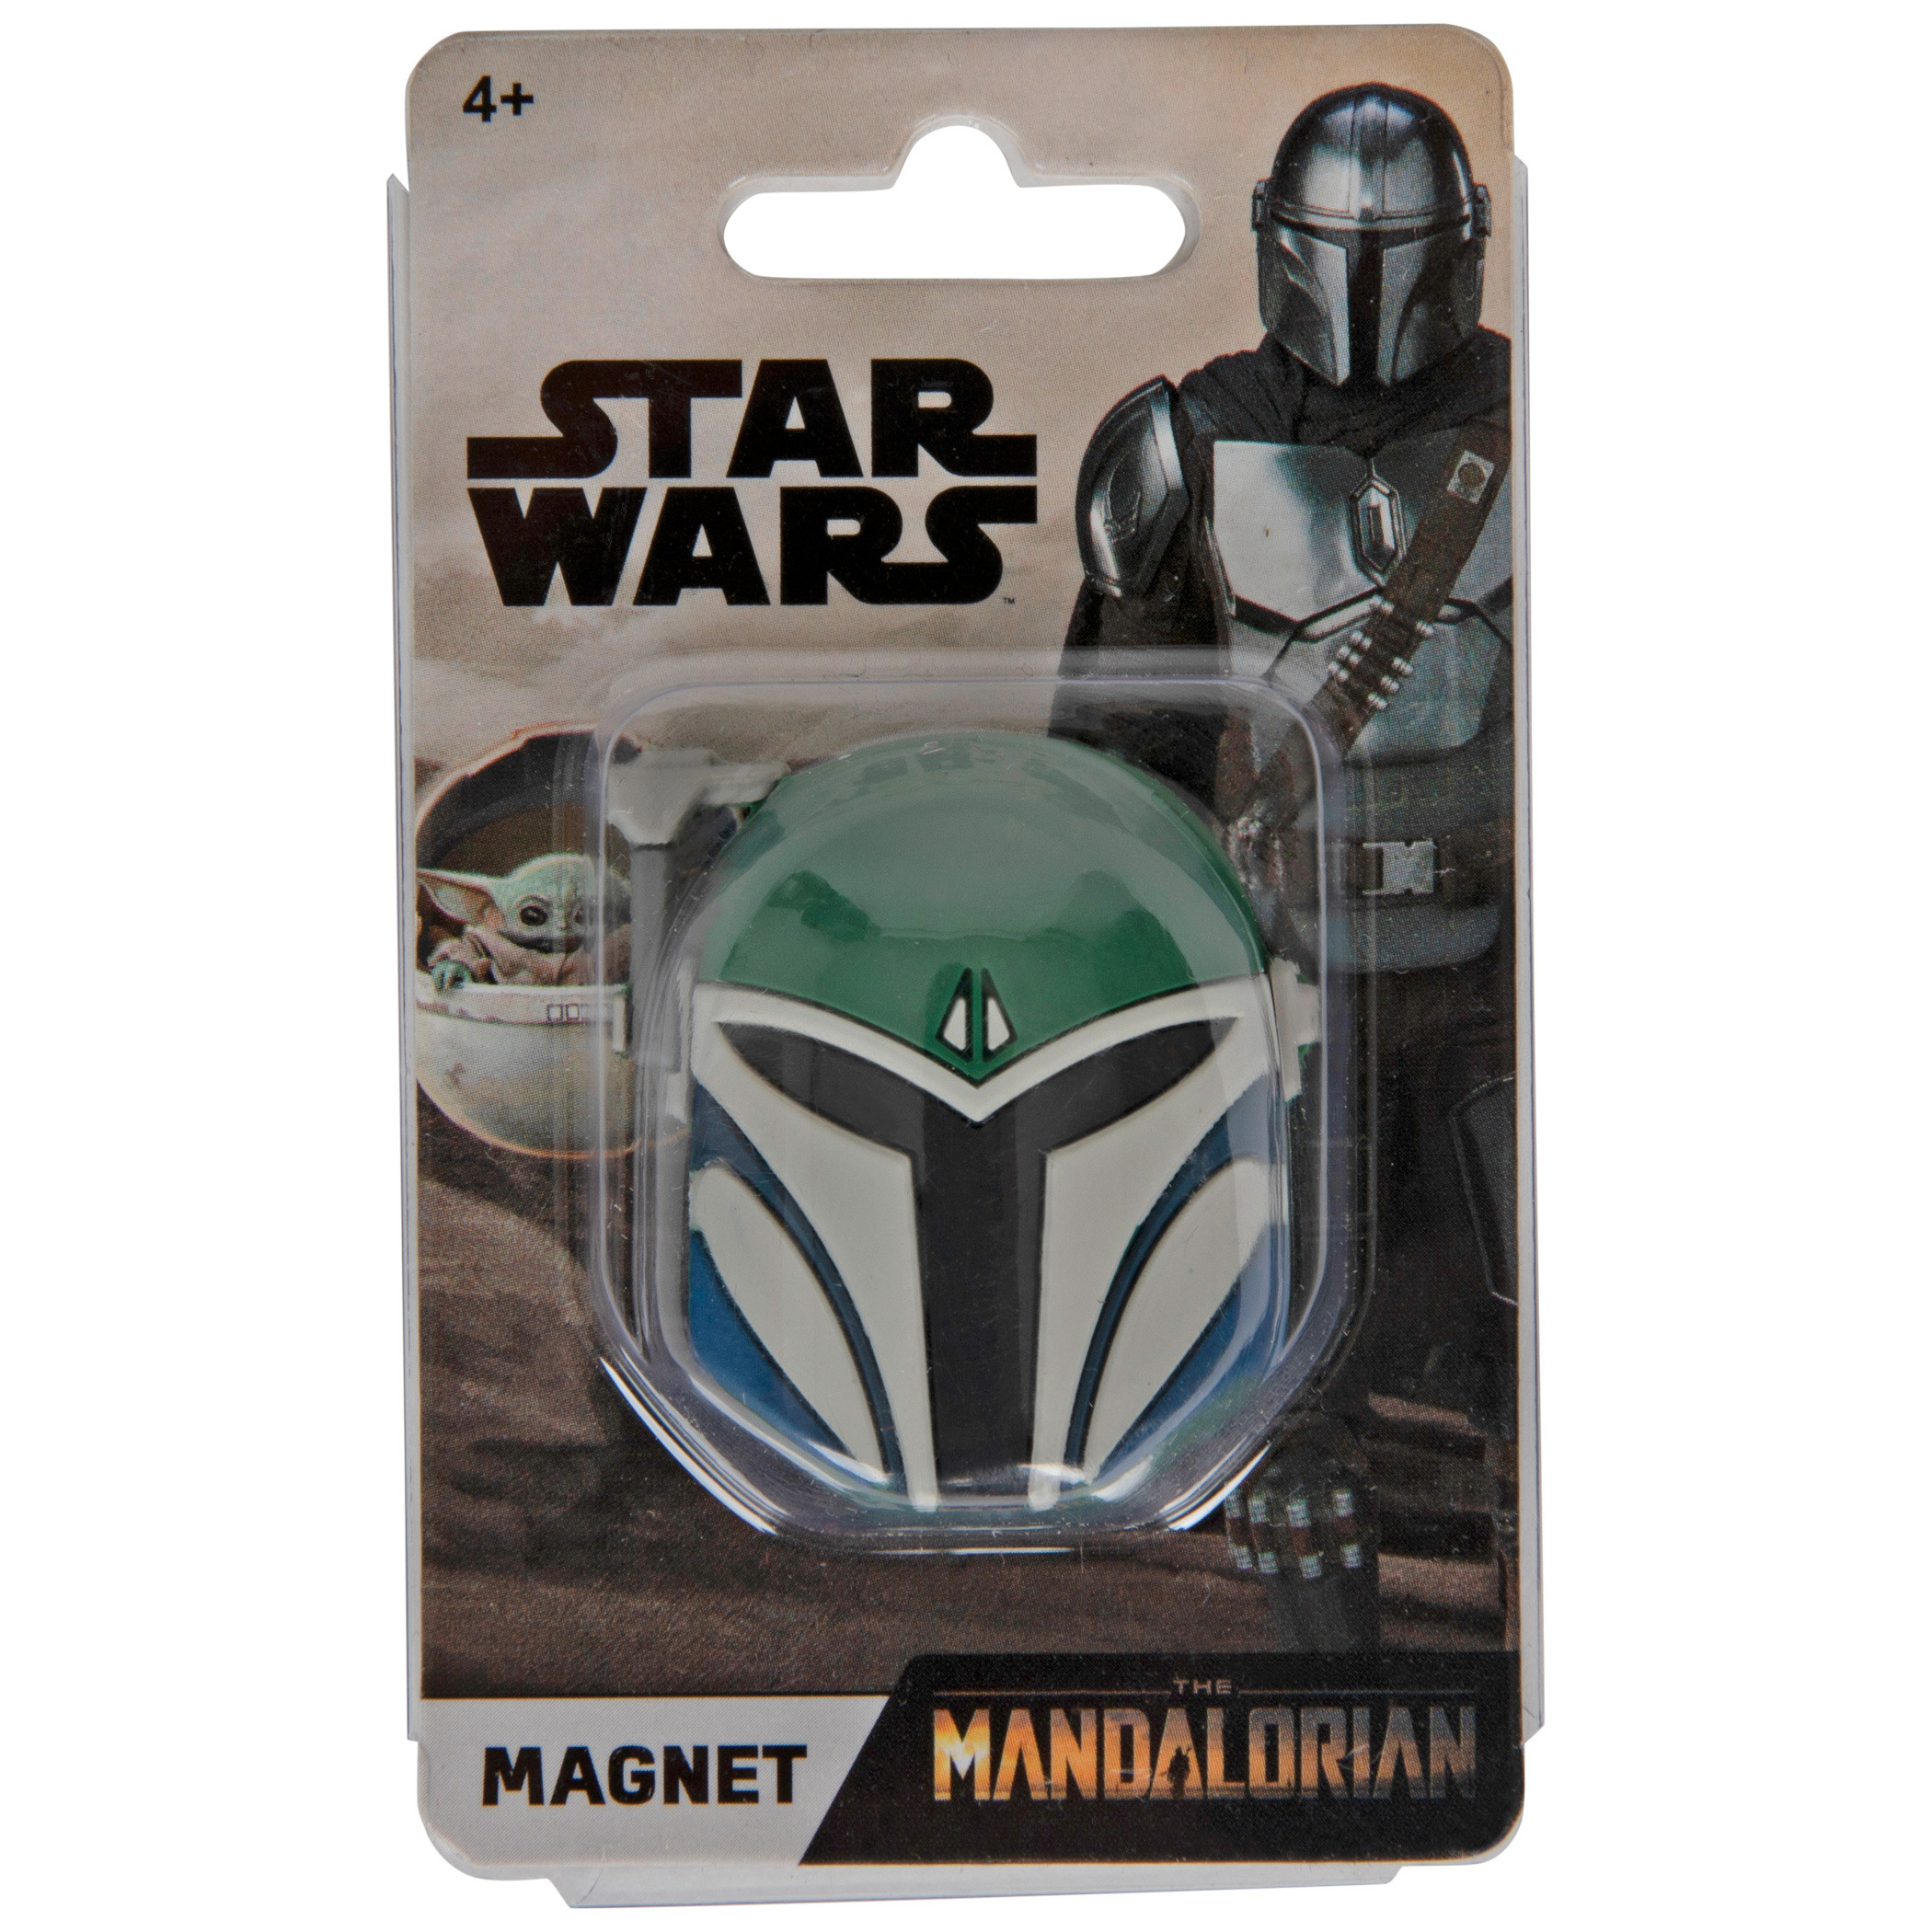 Star Wars The Mandalorian Nite Owl Helmet 3D Novelty Magnet